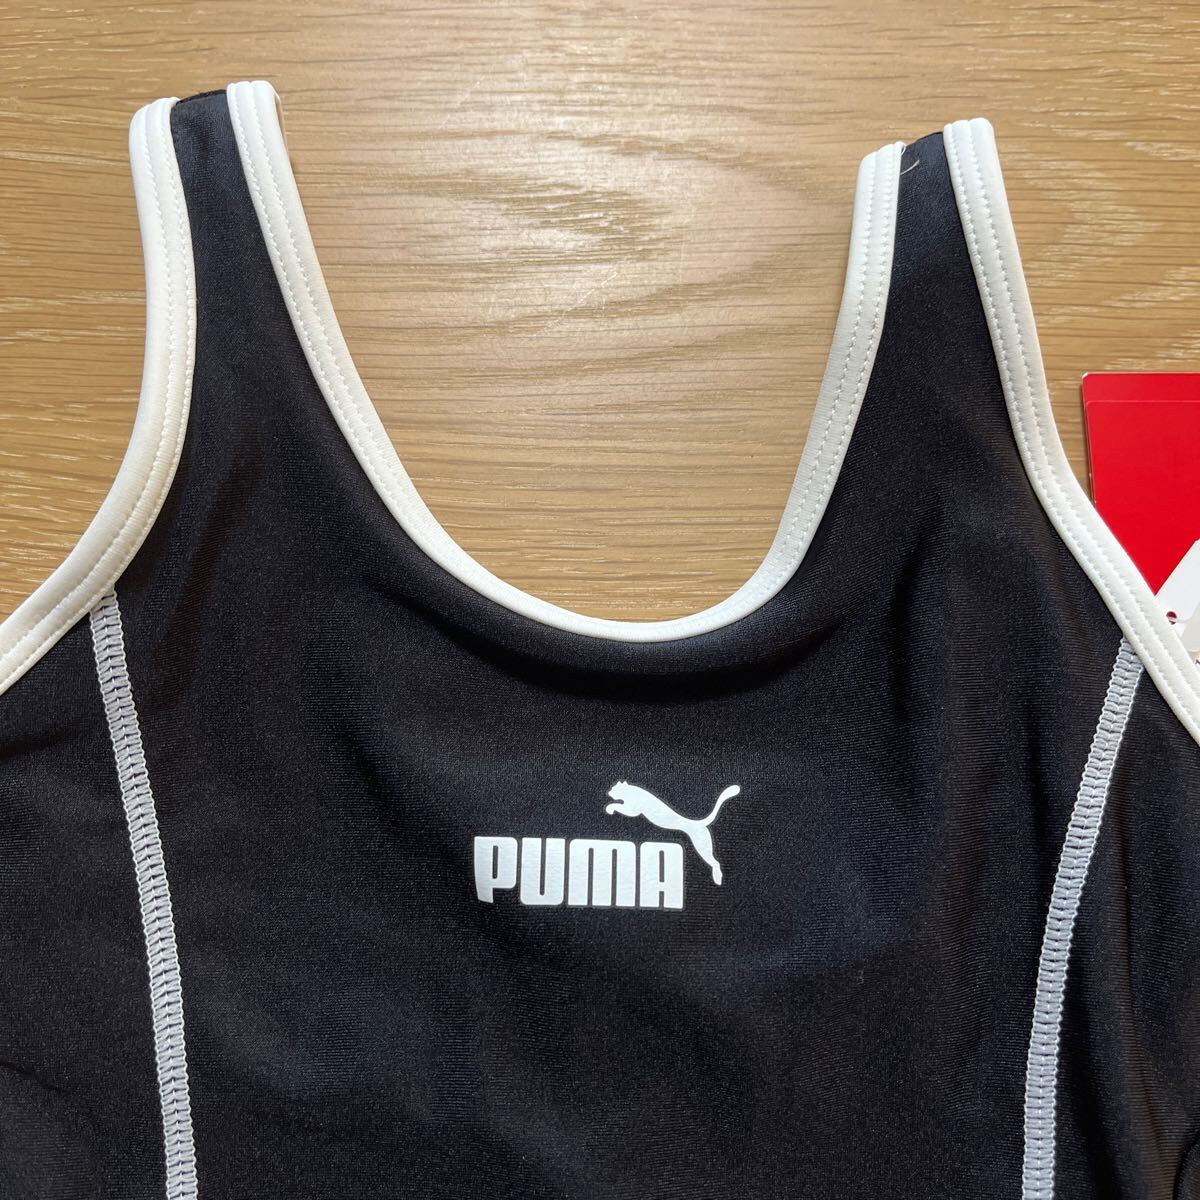 * новый товар! с биркой!PUMA Puma плавание одежда школьный купальник чёрный белый 120 *